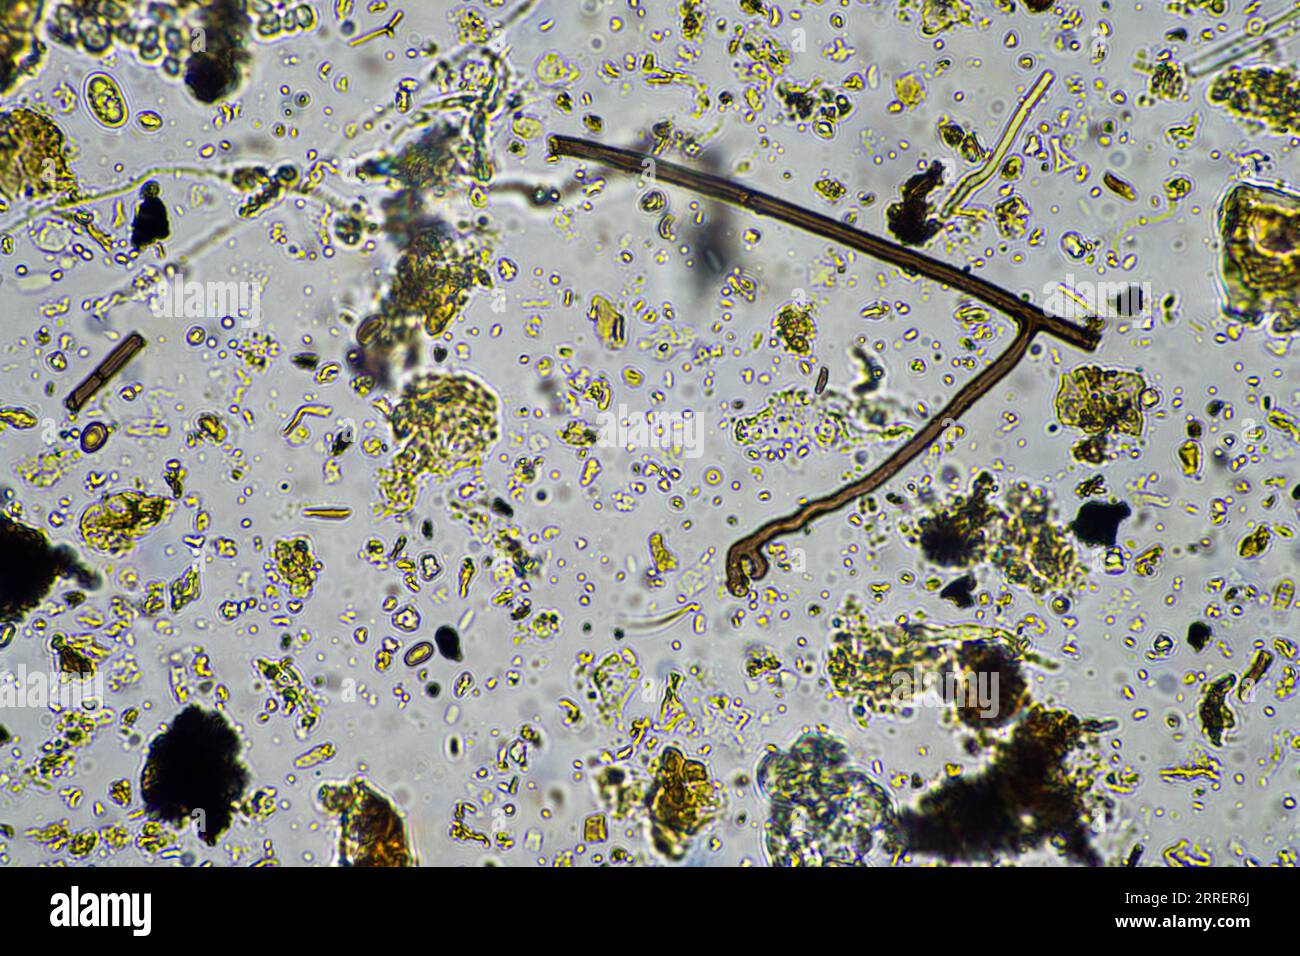 vita del suolo al microscopio con funghi del suolo e ifi fungine in un'azienda agricola Foto Stock